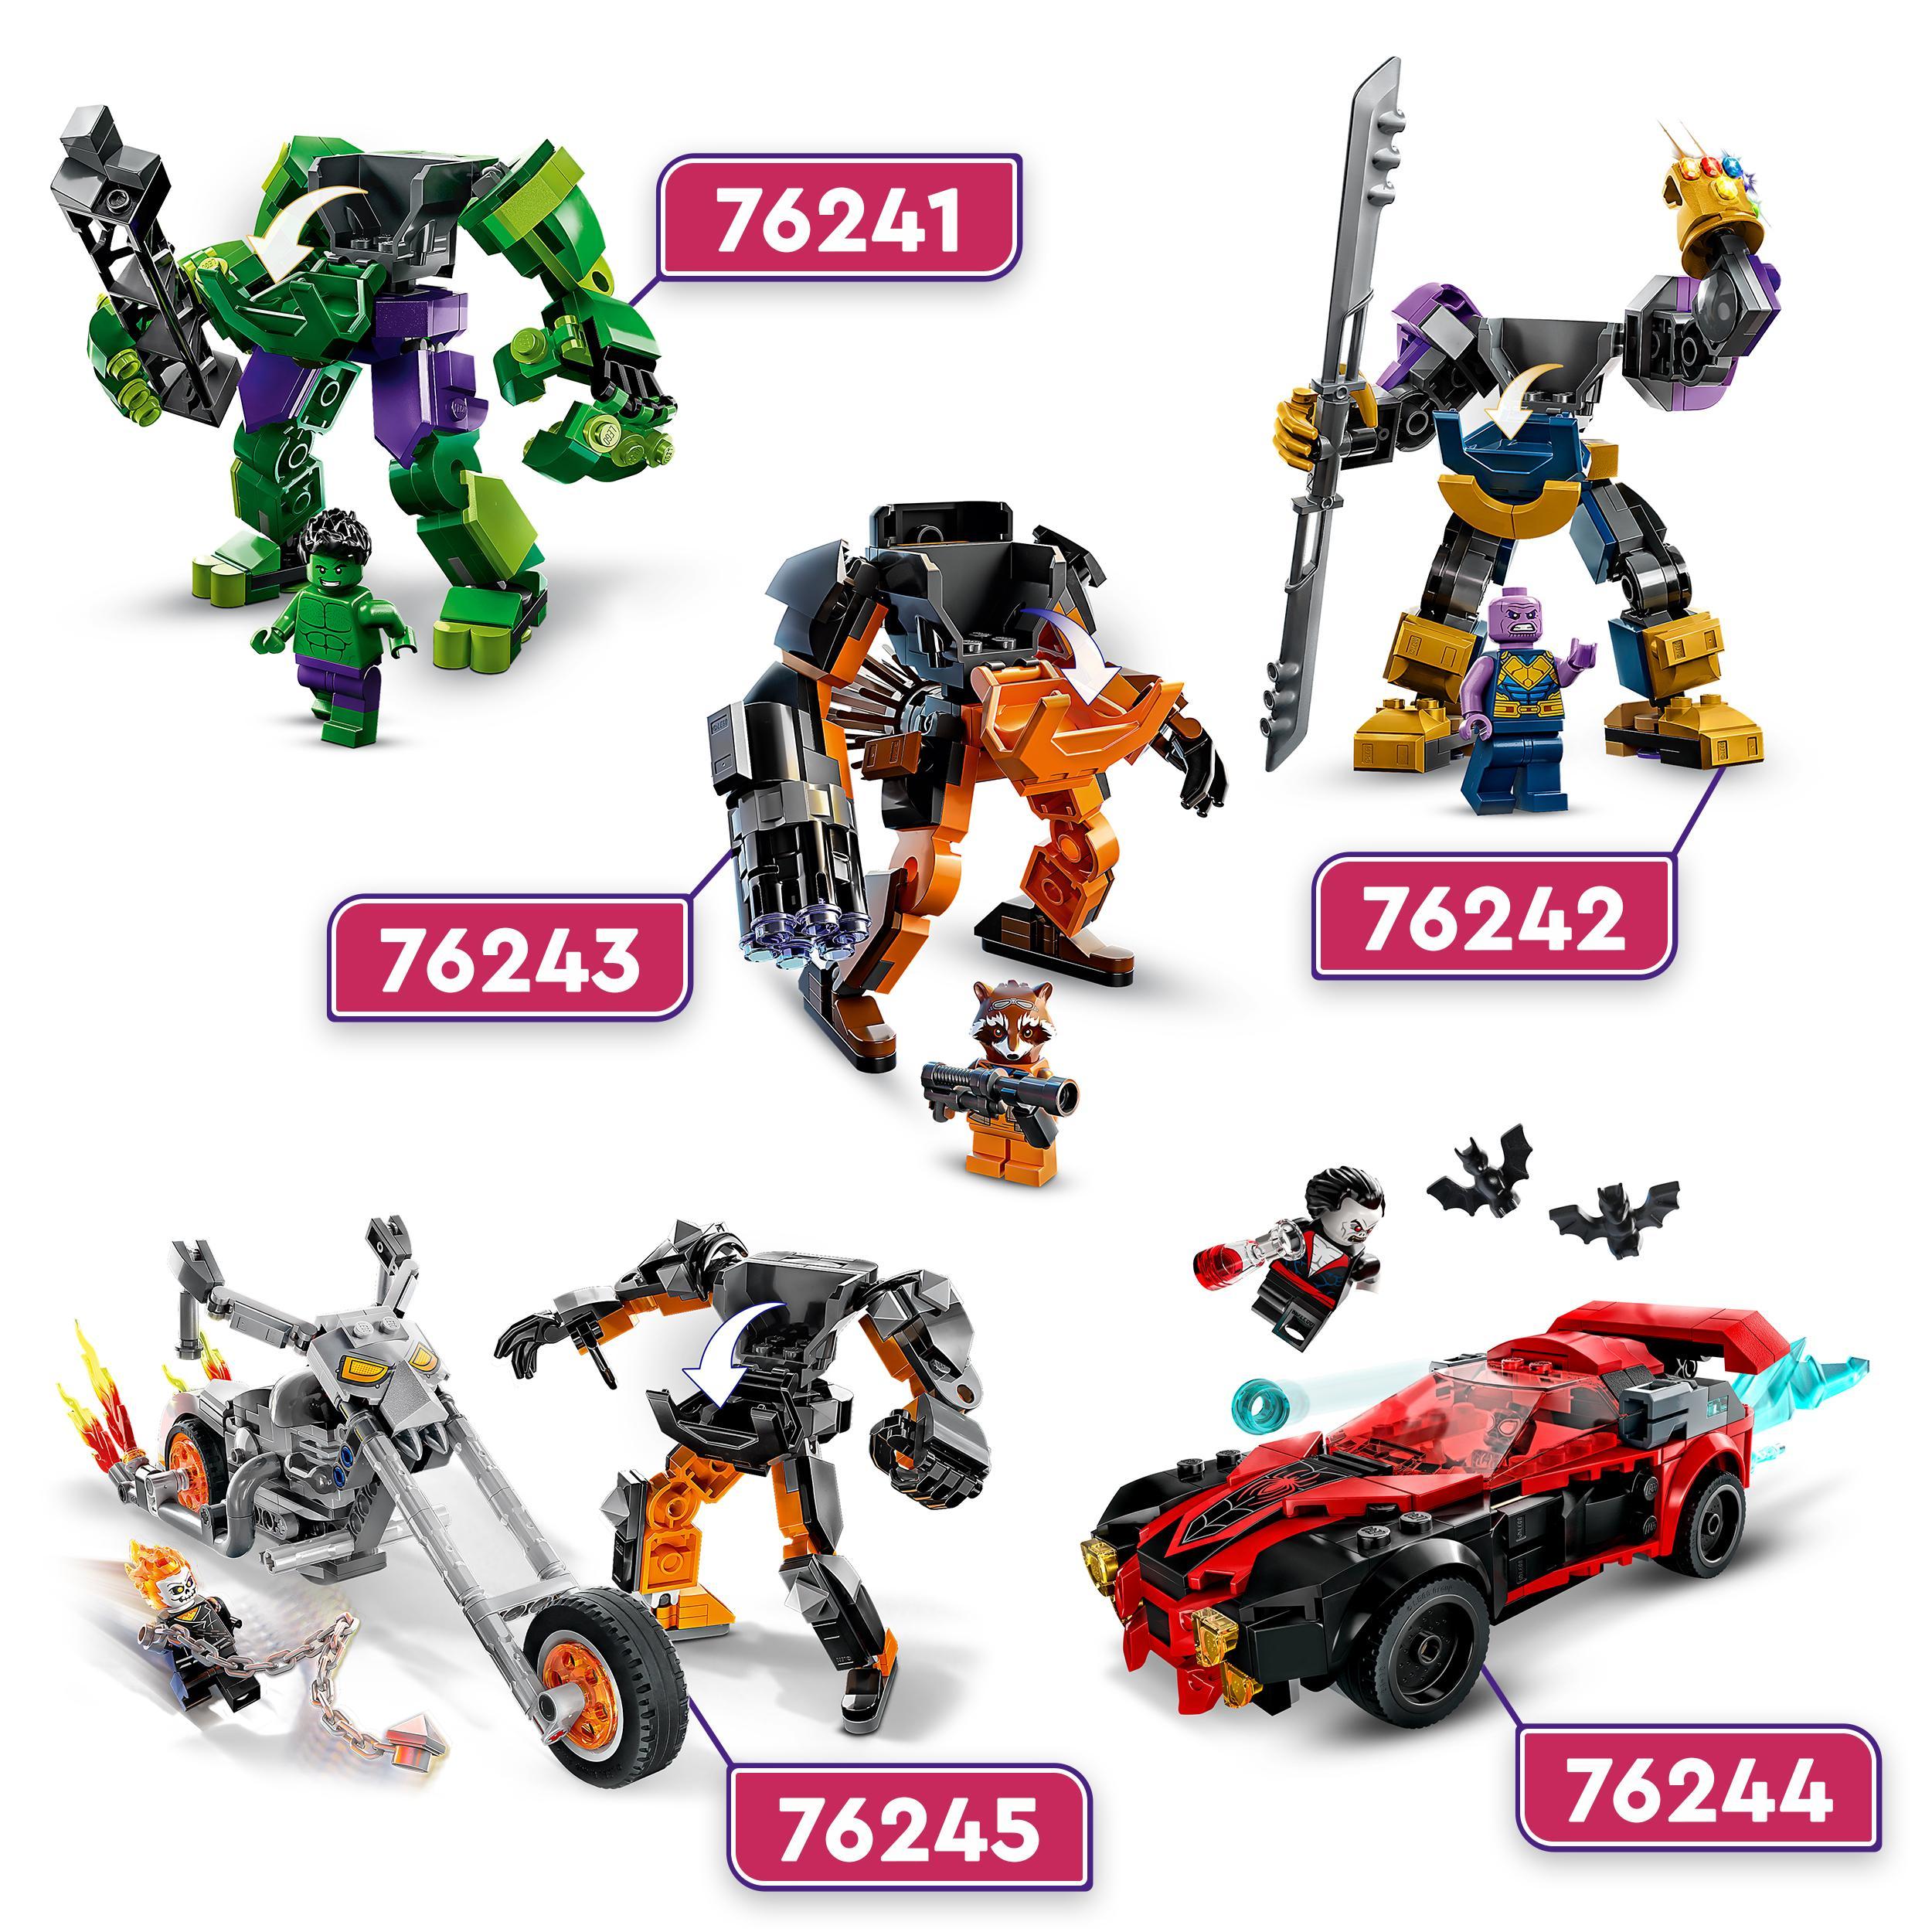 Lego marvel 76244 miles morales vs. morbius, spider-man giocattolo per bambini con macchina da corsa e minifigure di spidey - LEGO SUPER HEROES, Spiderman